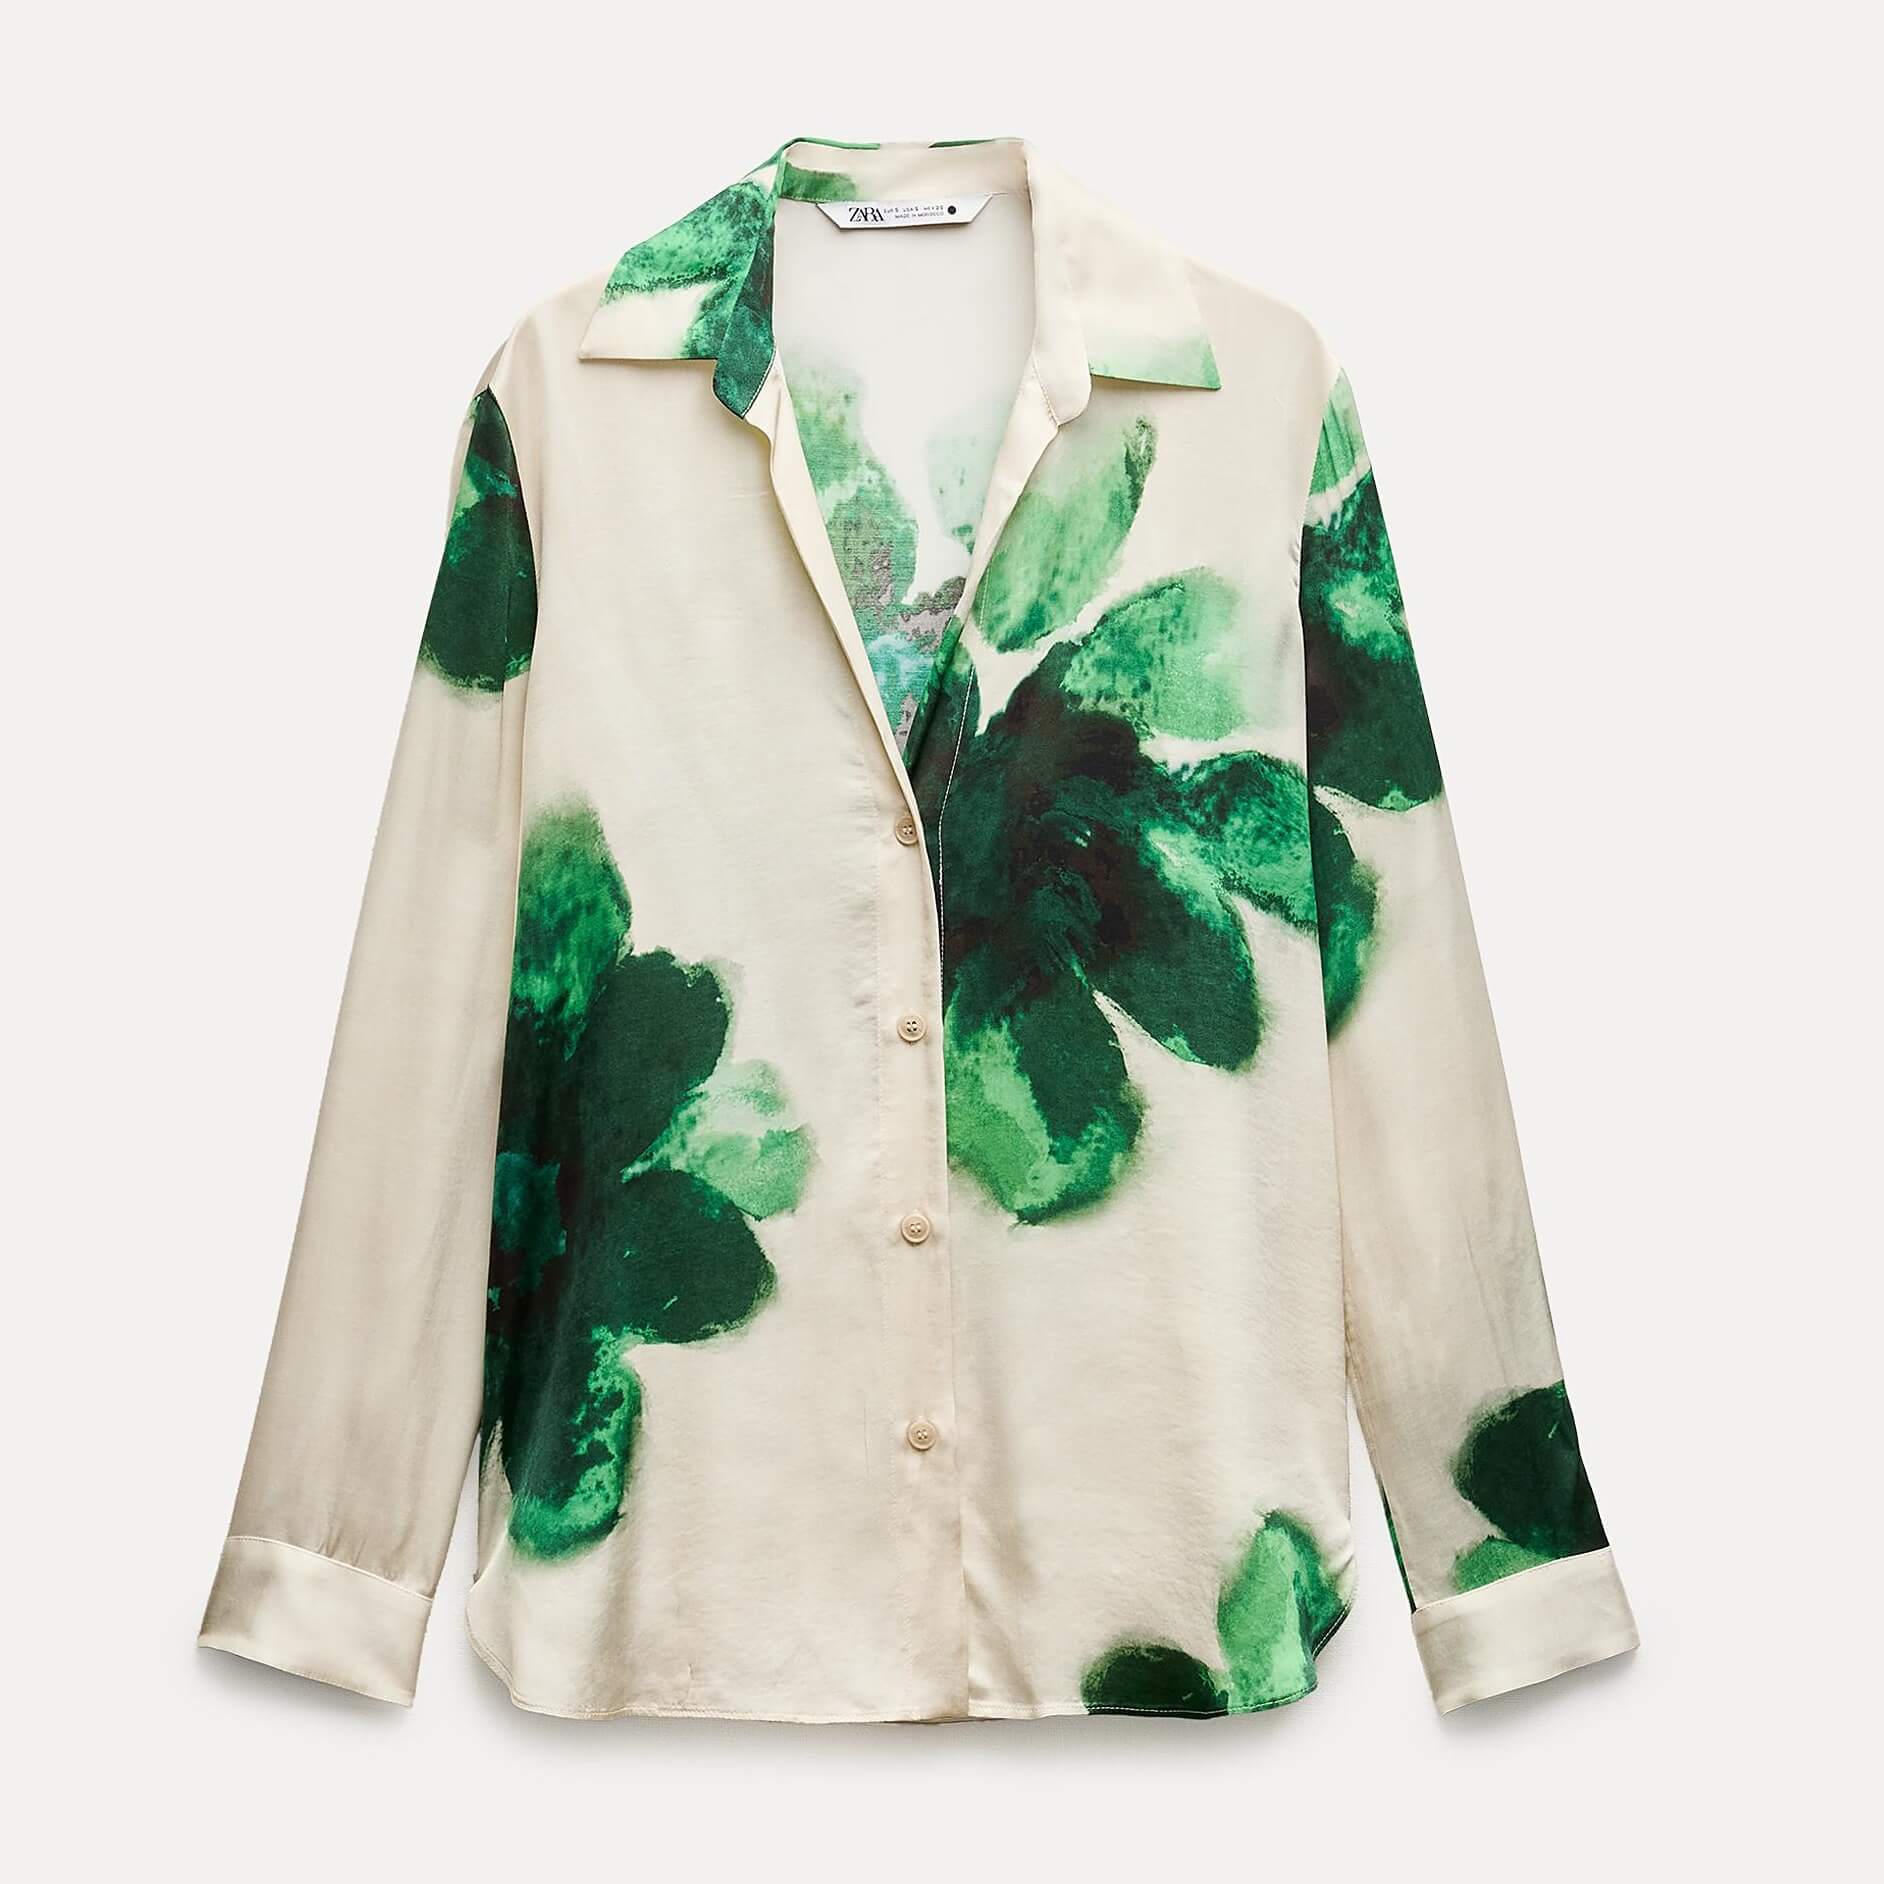 Рубашка Zara ZW Collection Flowing Printed, бежевый/зеленый рубашка zara бежевый зеленый